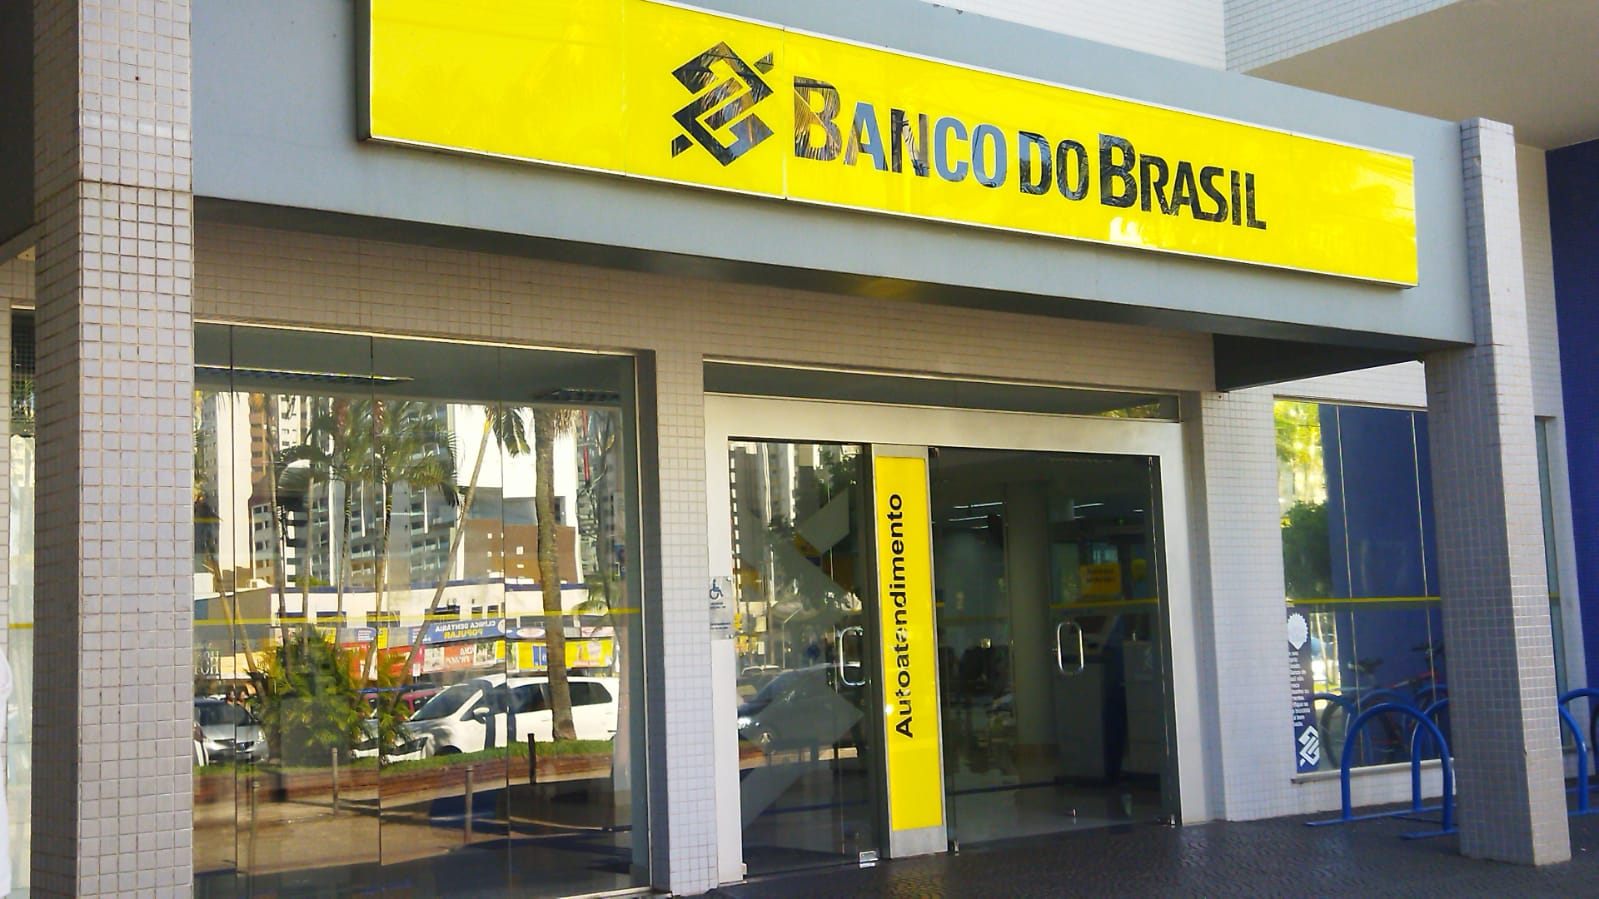 Sexta tem jogo do Brasil e bancos têm horário especial